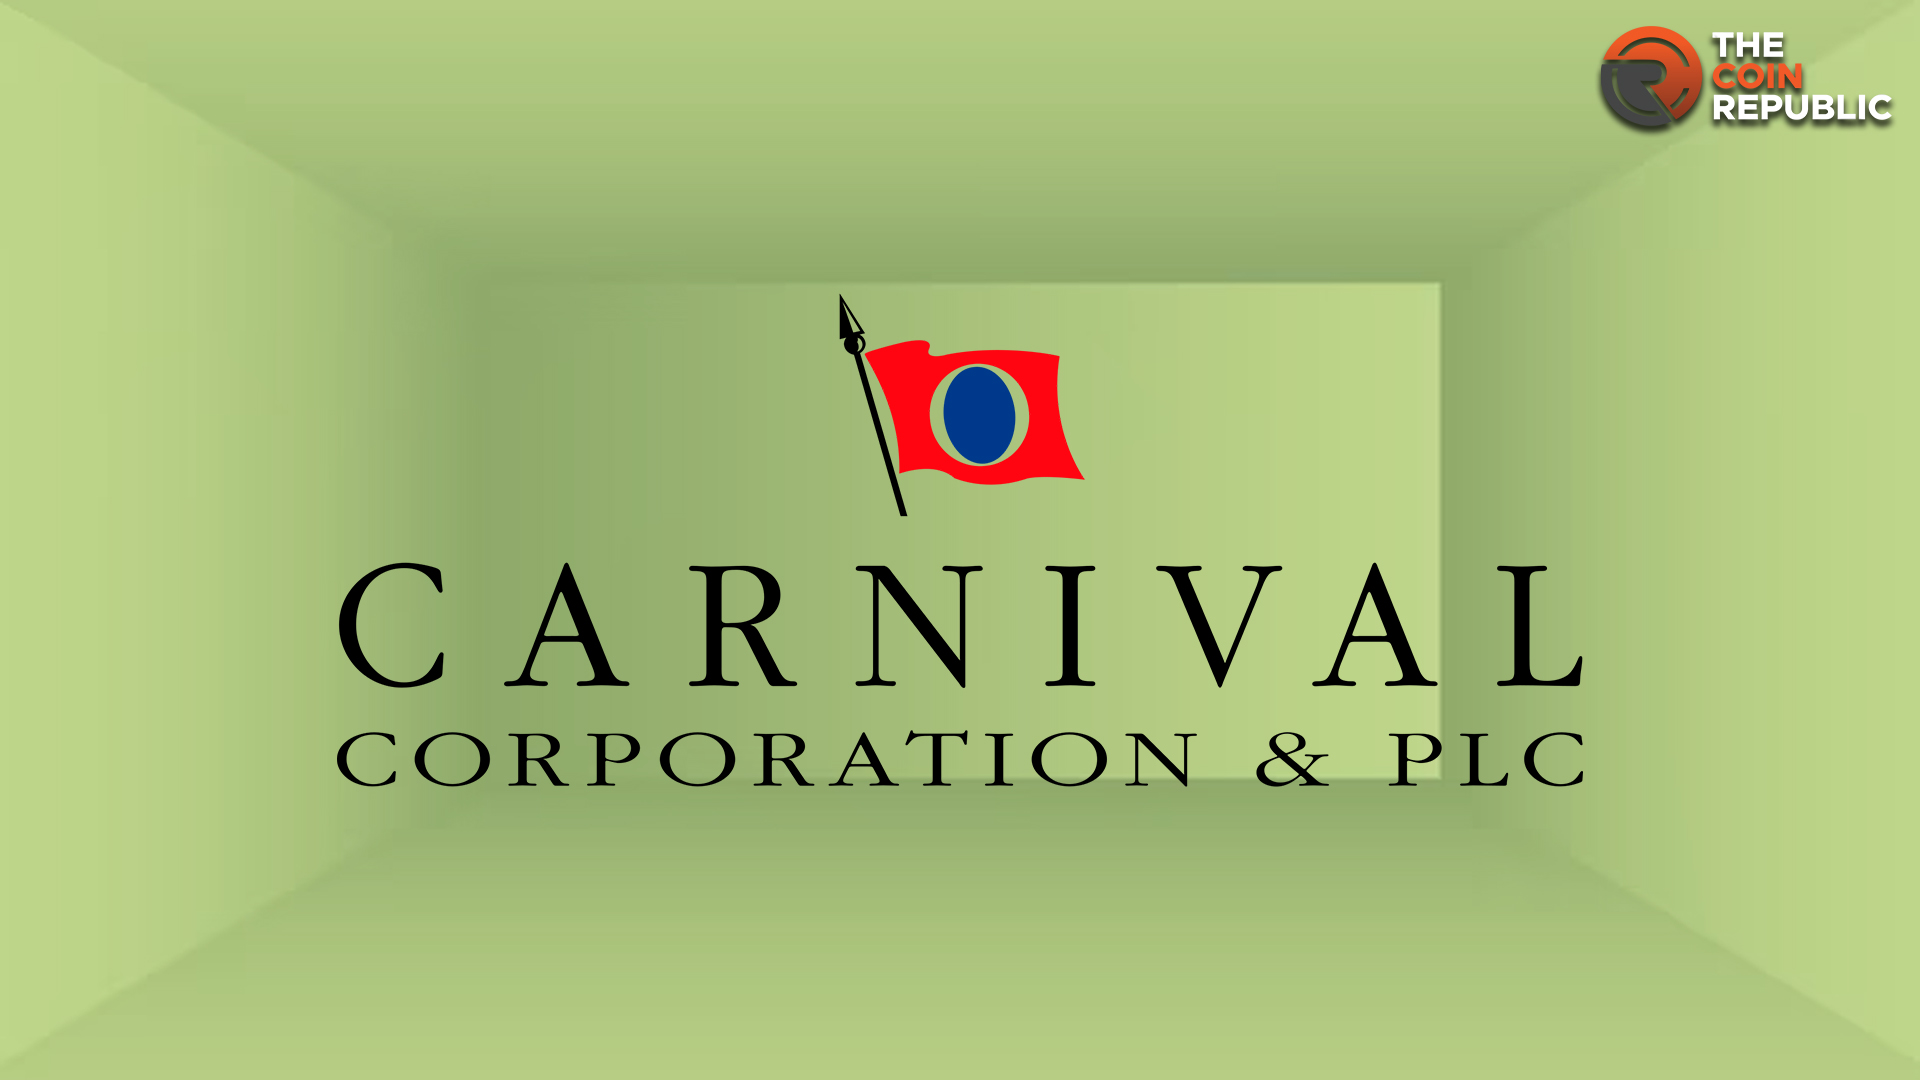 CCL Stock Forecast: Will Carnival Stock Price Break $20 in Sep?